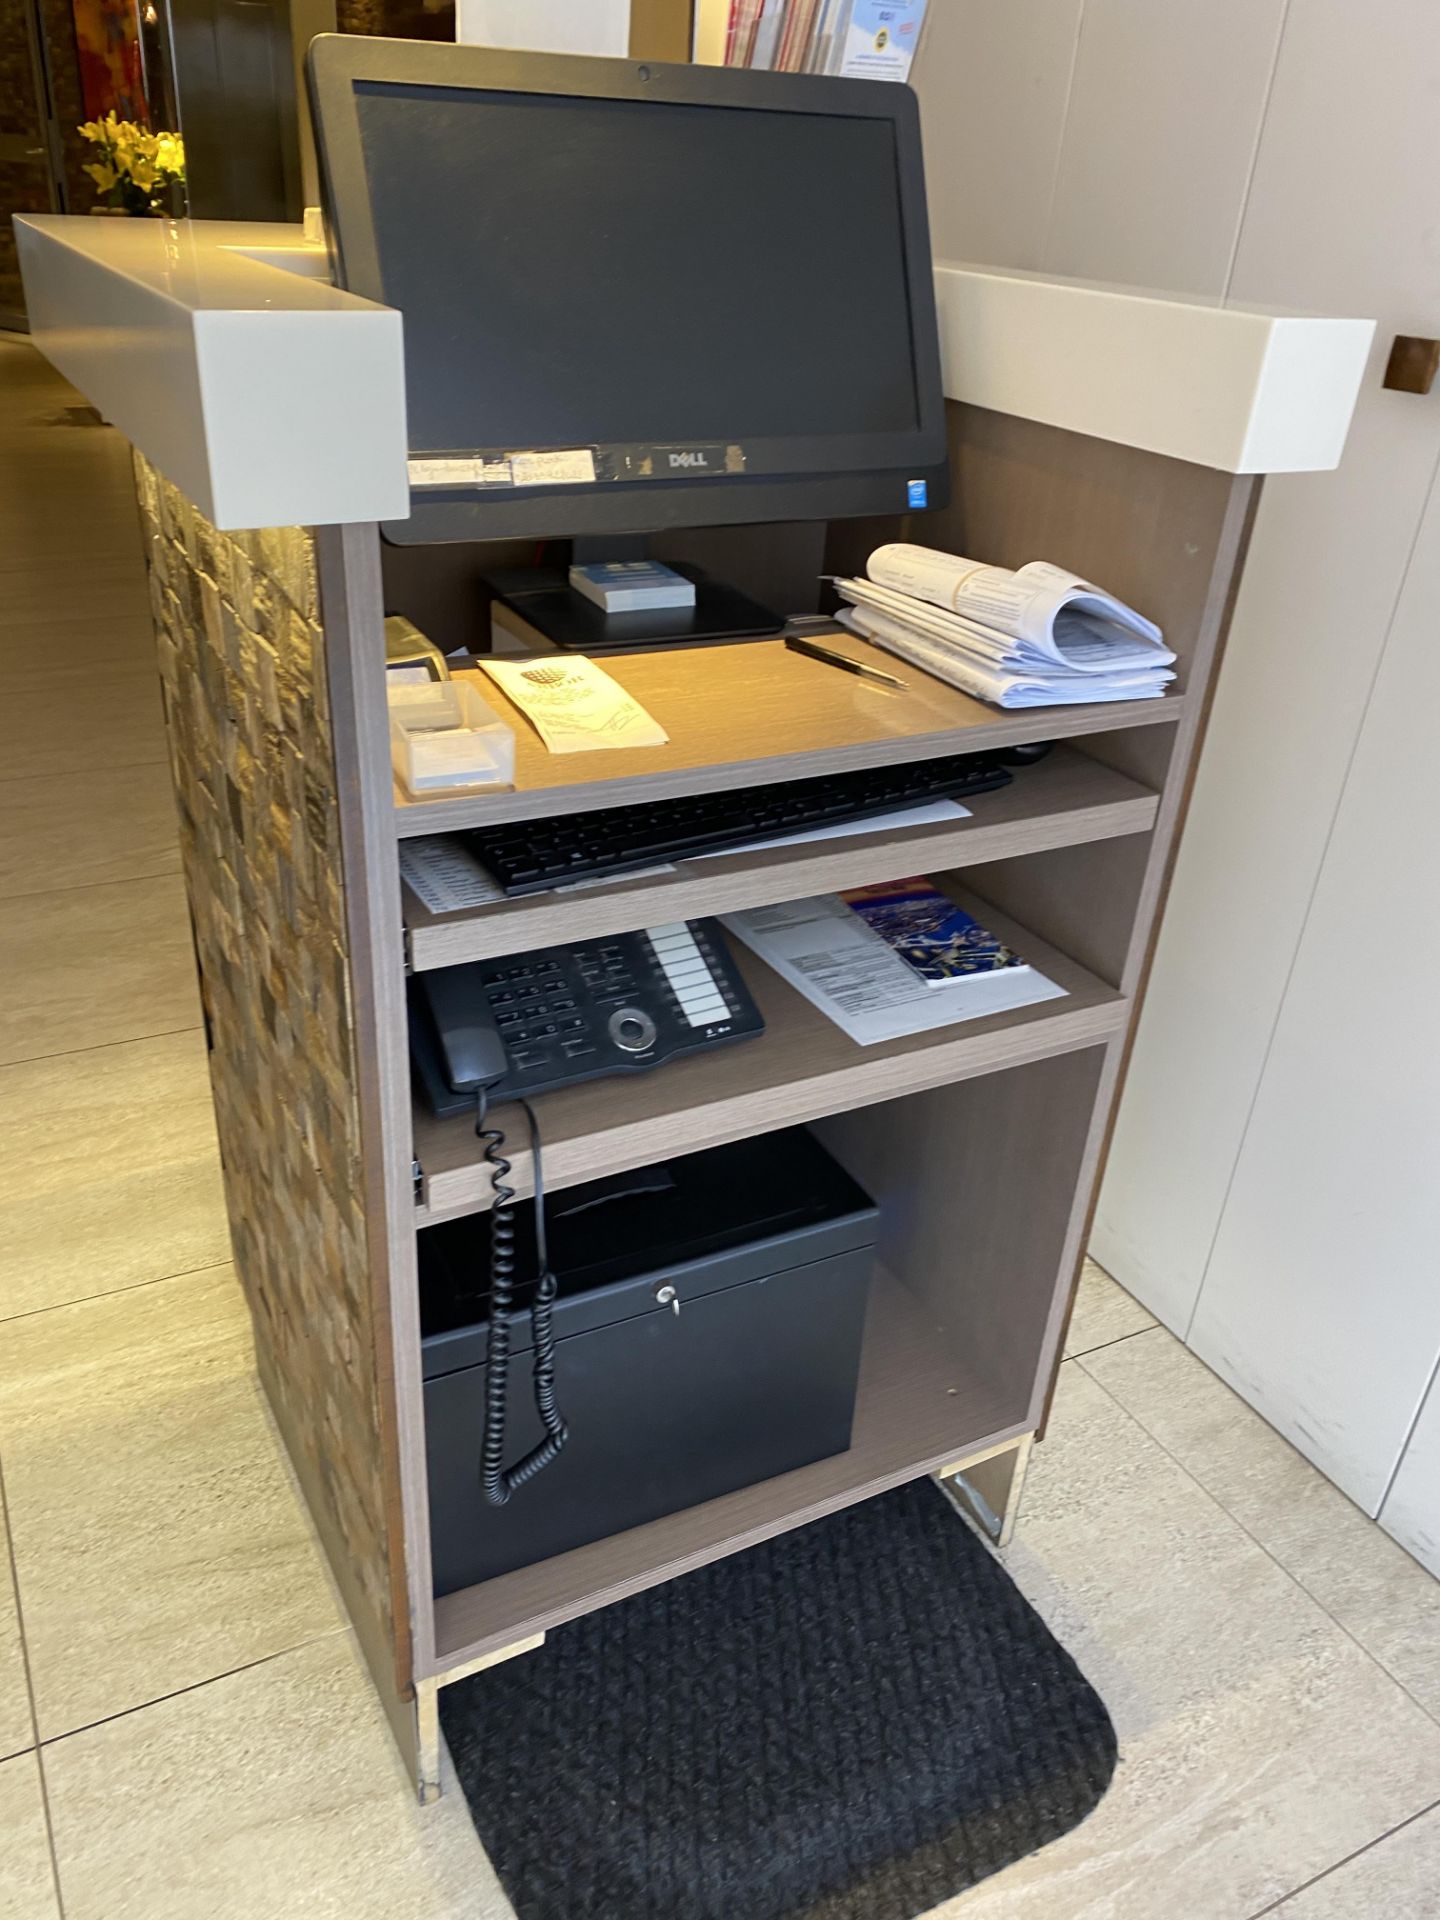 Reception Desk / Front Desks with Wood Effect Tiles & Lighting - Image 2 of 2